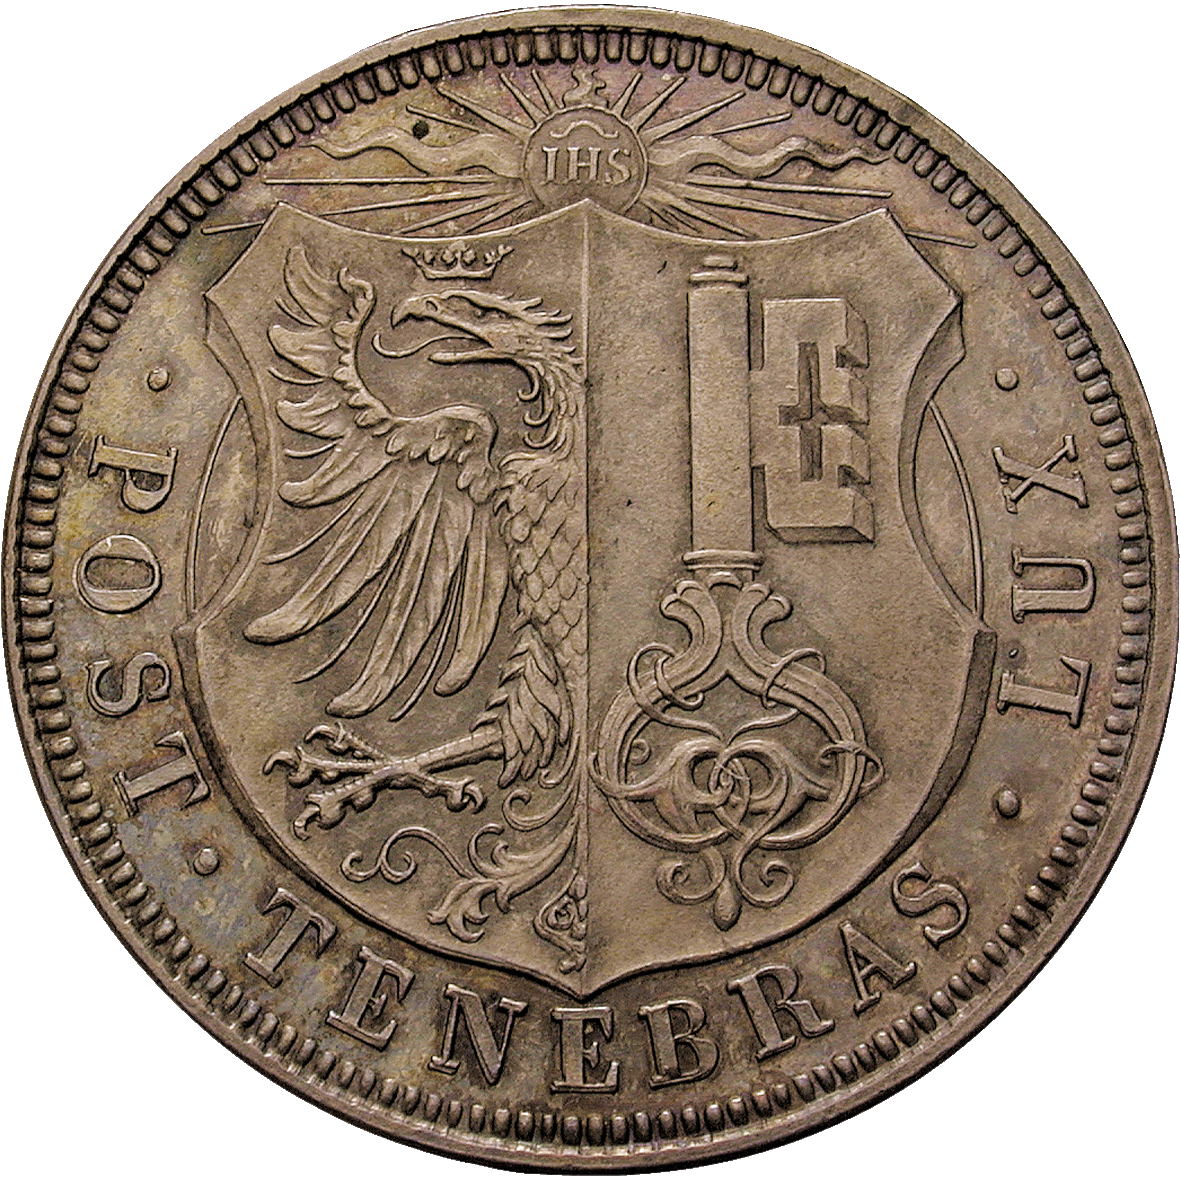 Kanton und Republik Genf, 5 Francs 1848 (obverse)